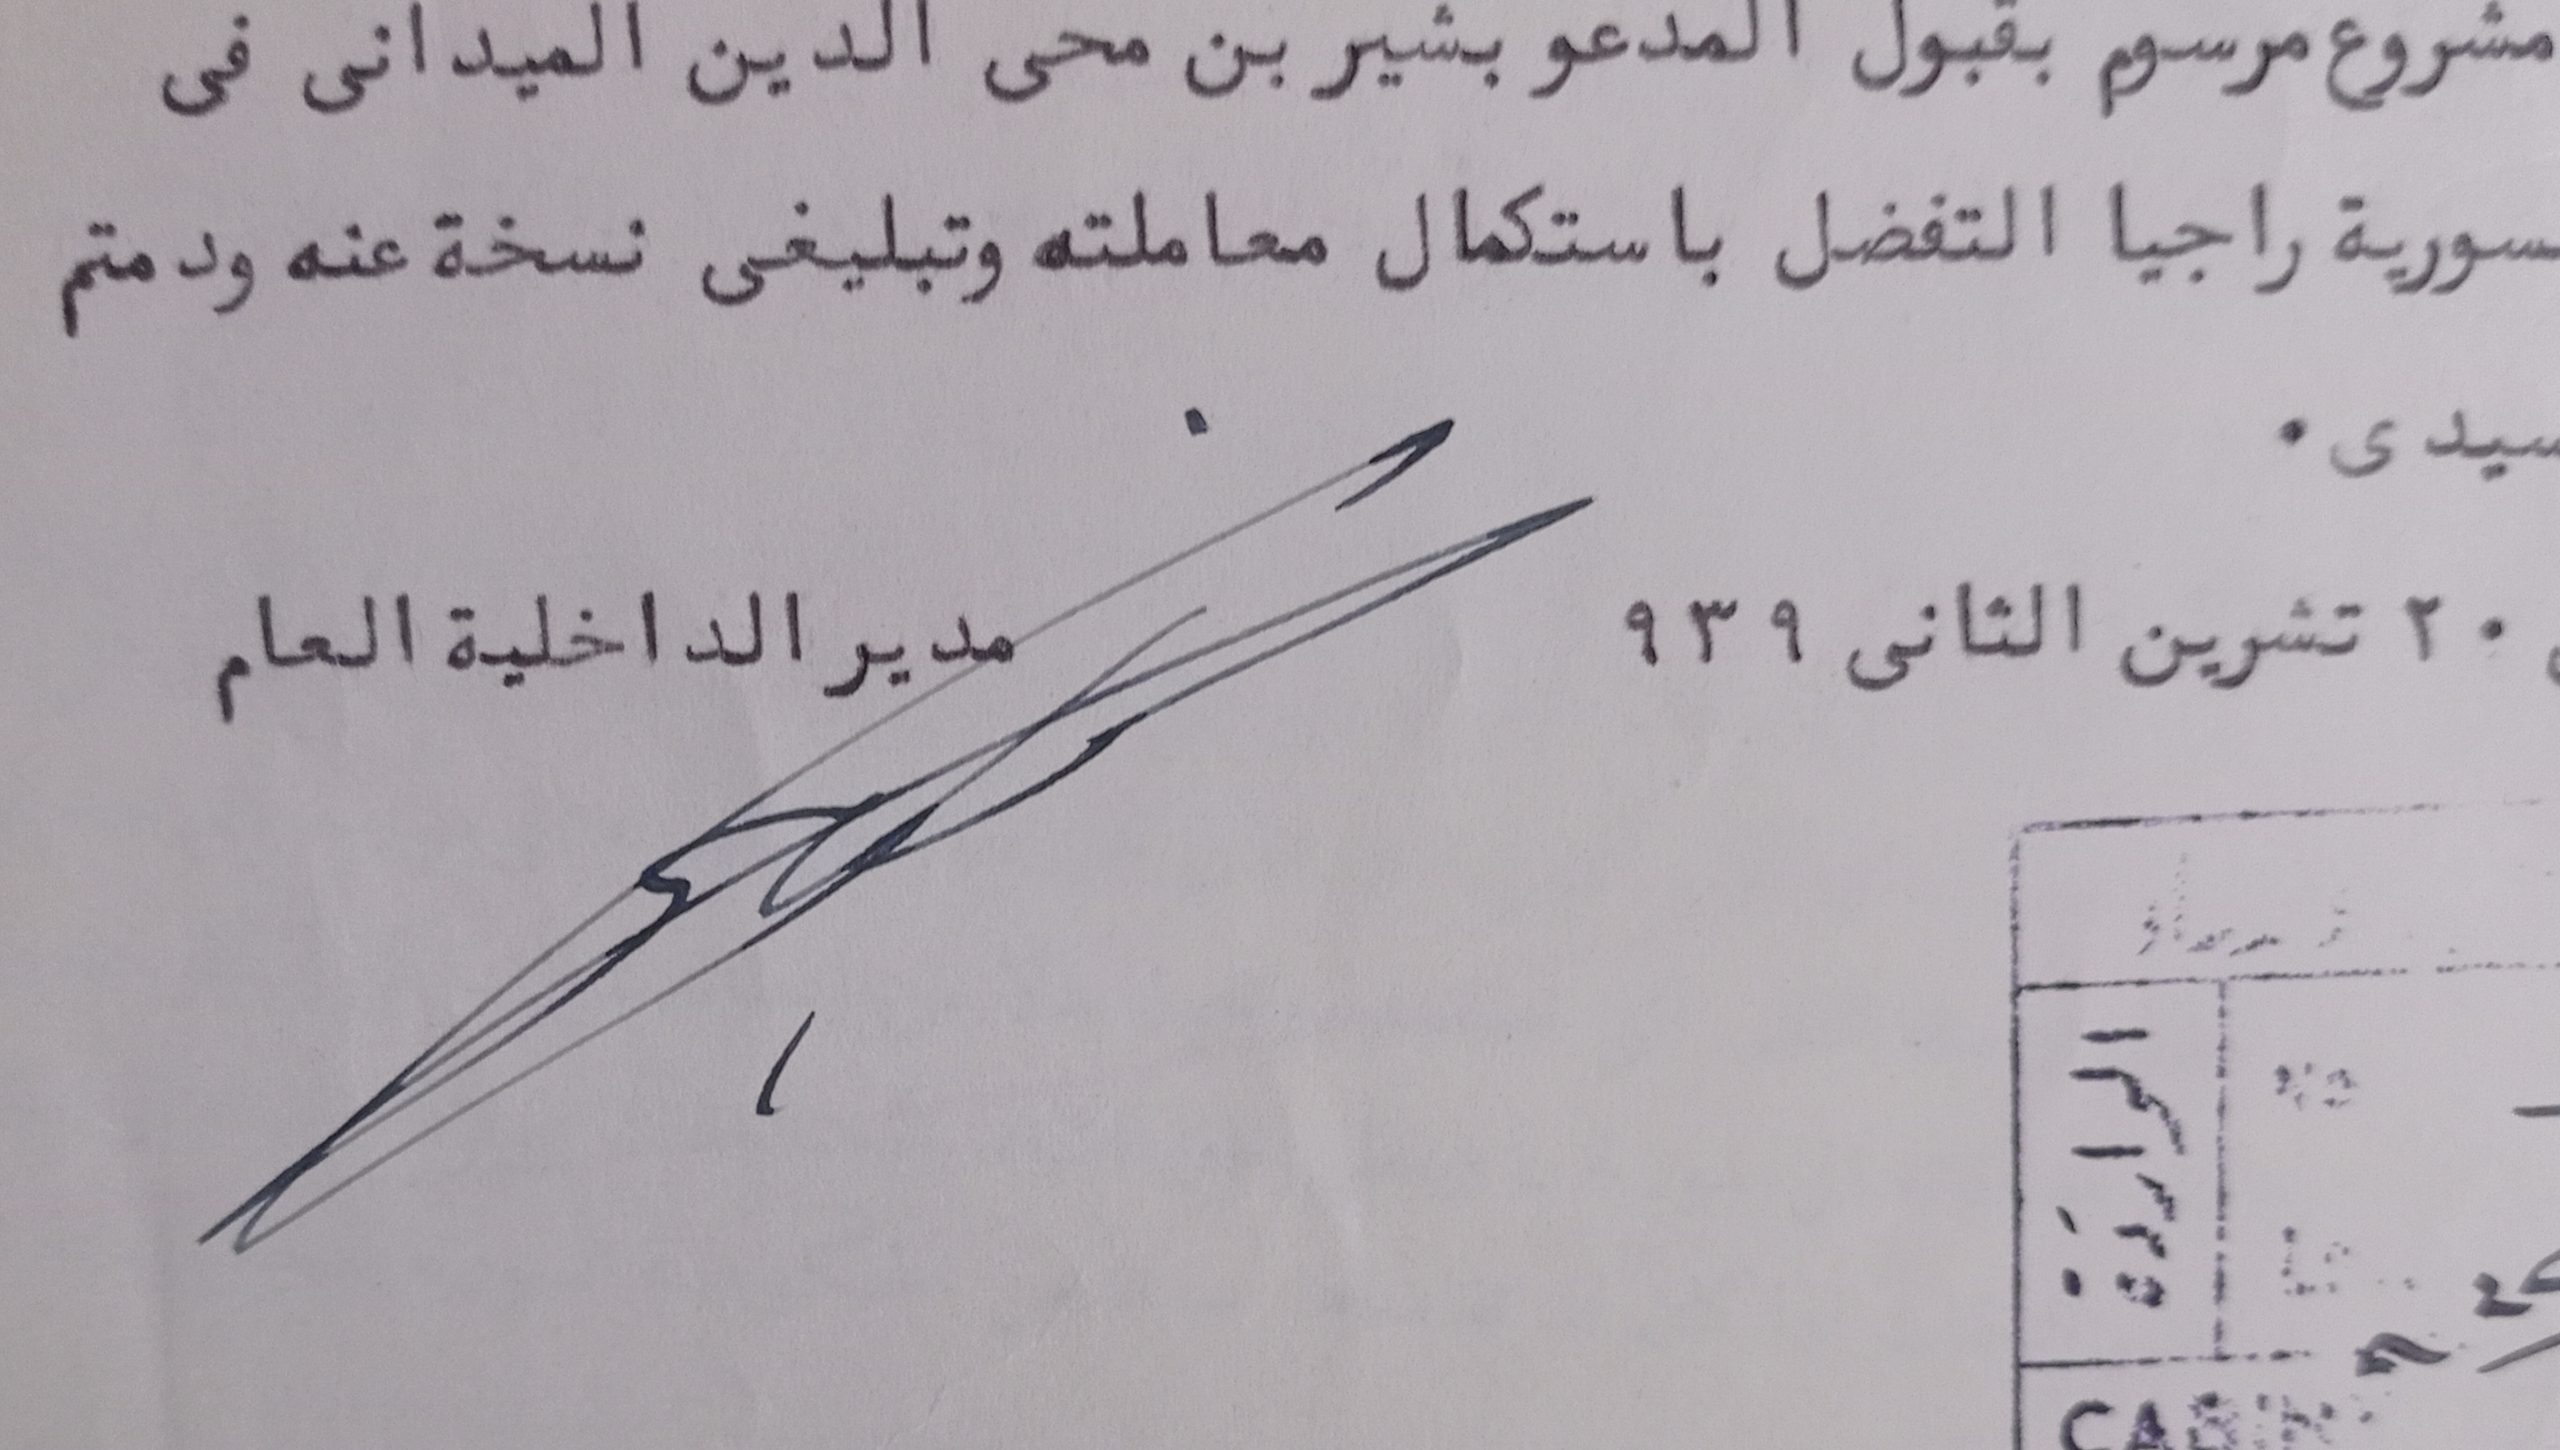 التاريخ السوري المعاصر - توقيع بهيج الخطيب مدير الداخلية العام في سورية عام 1939